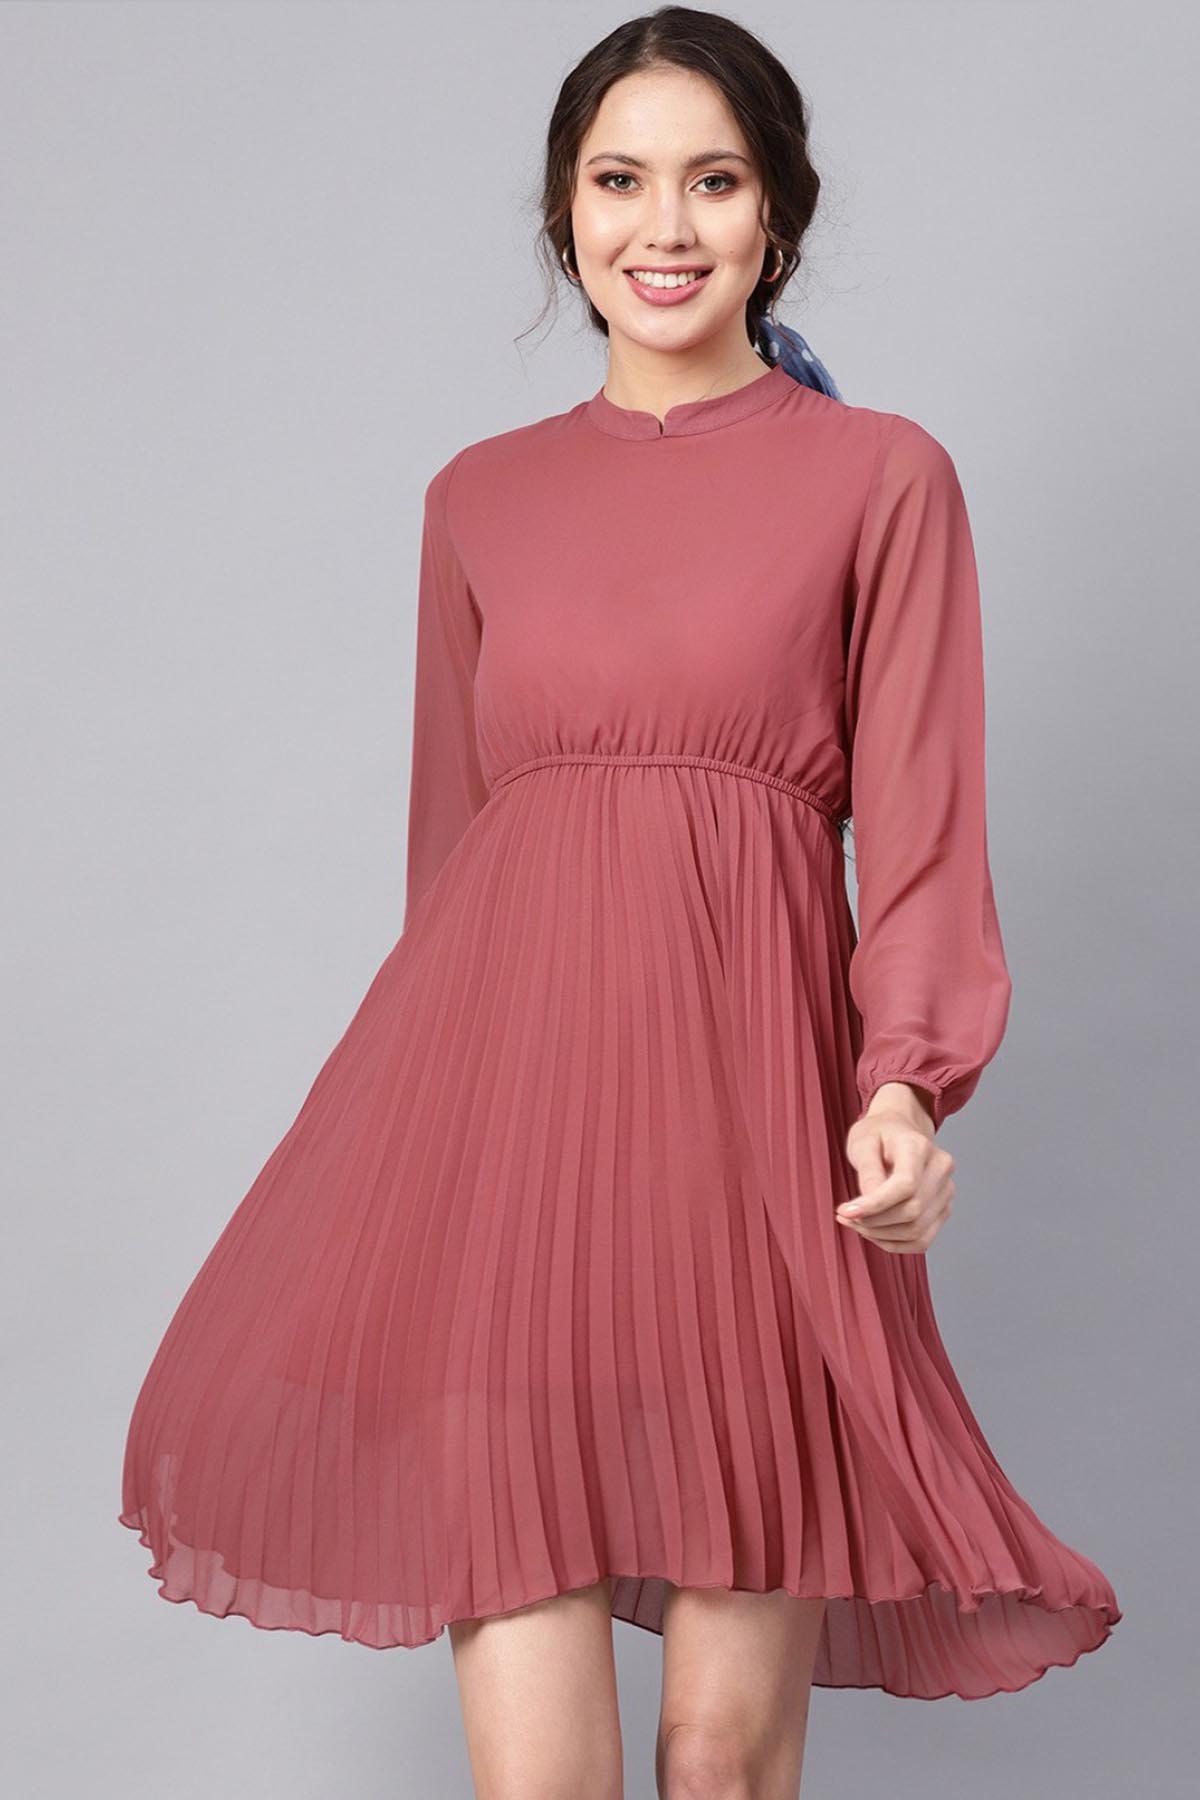 Western Wear Dresses Menu - Buy Western Wear Dresses Menu online in India